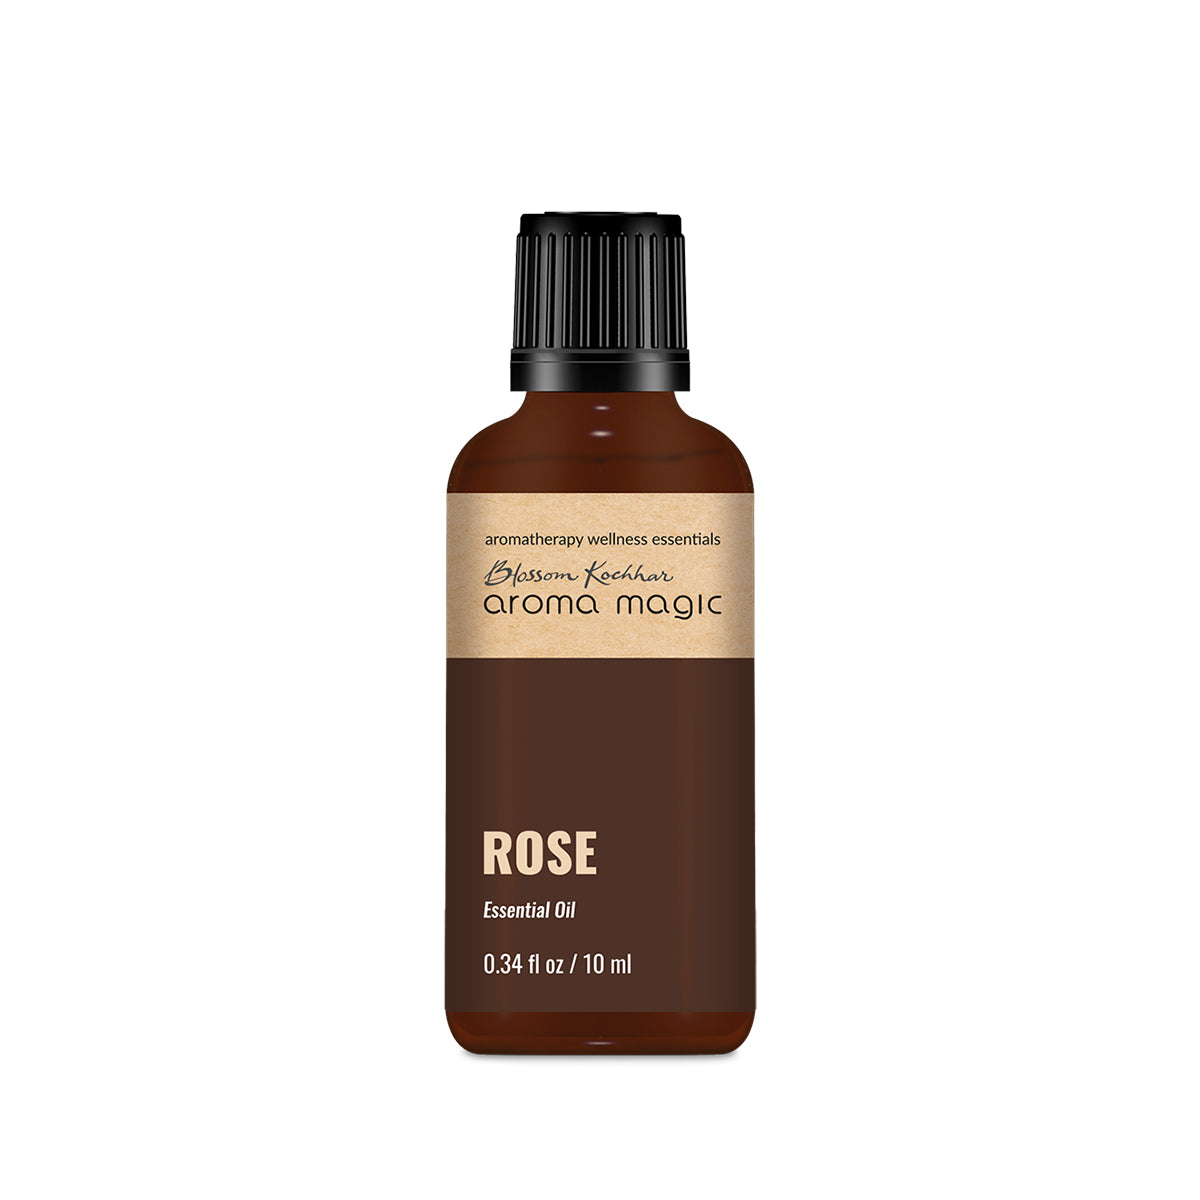 Rose Essential Oil - Aroma Magic